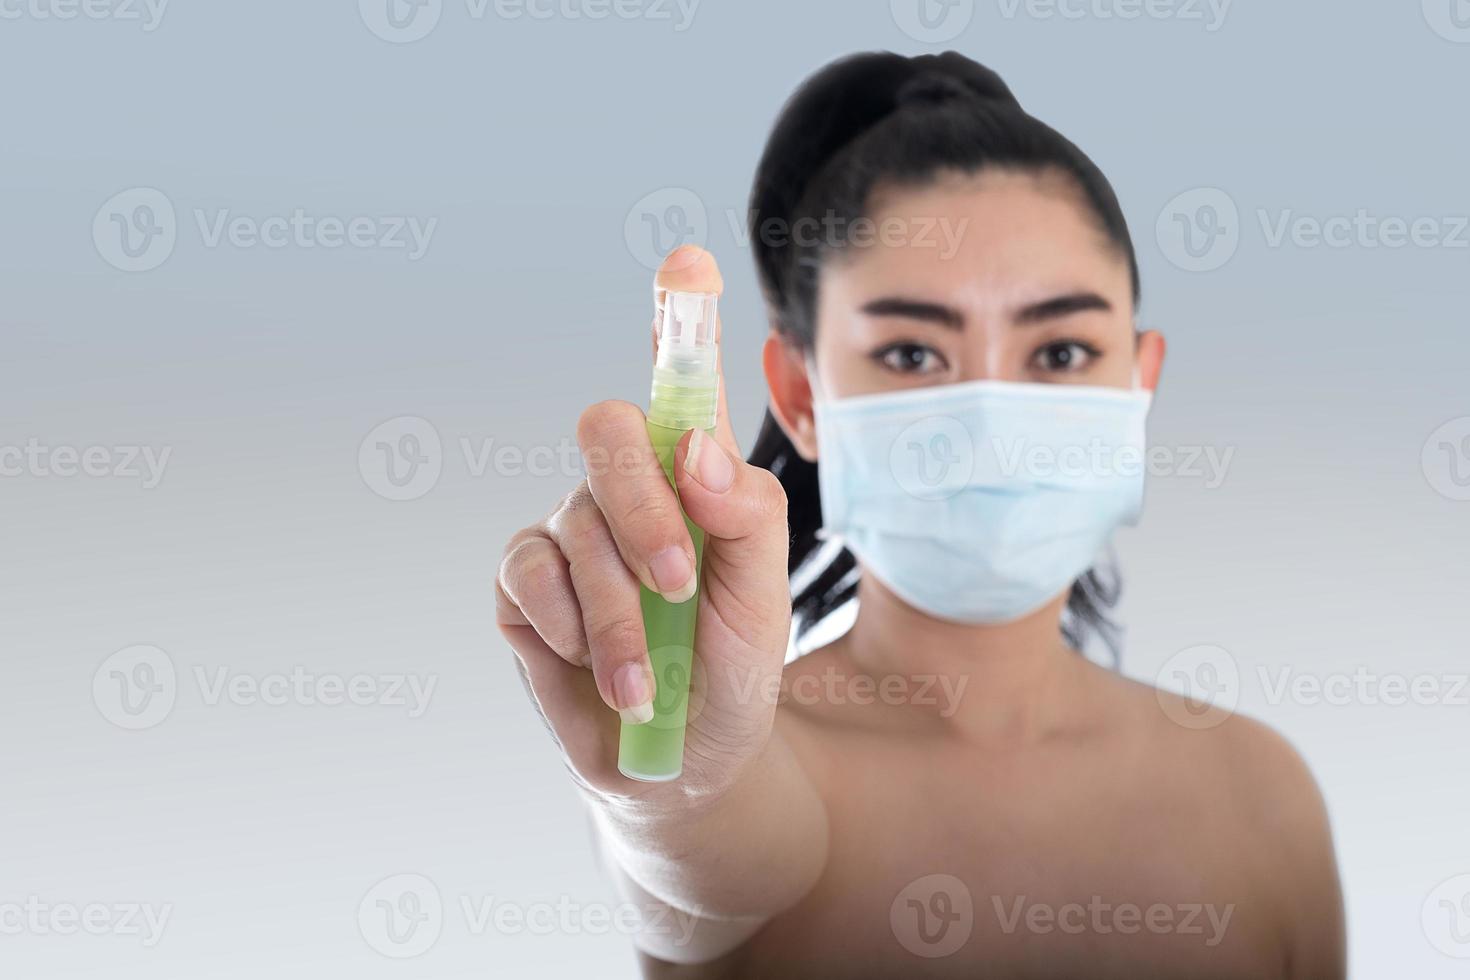 jonge aziatische vrouw die een medisch masker n95 opzet met de hand die alcoholspray uit de plastic fles of antibacteriën aanbrengt om de verspreiding van ziektekiemen op een grijze achtergrond te voorkomen foto